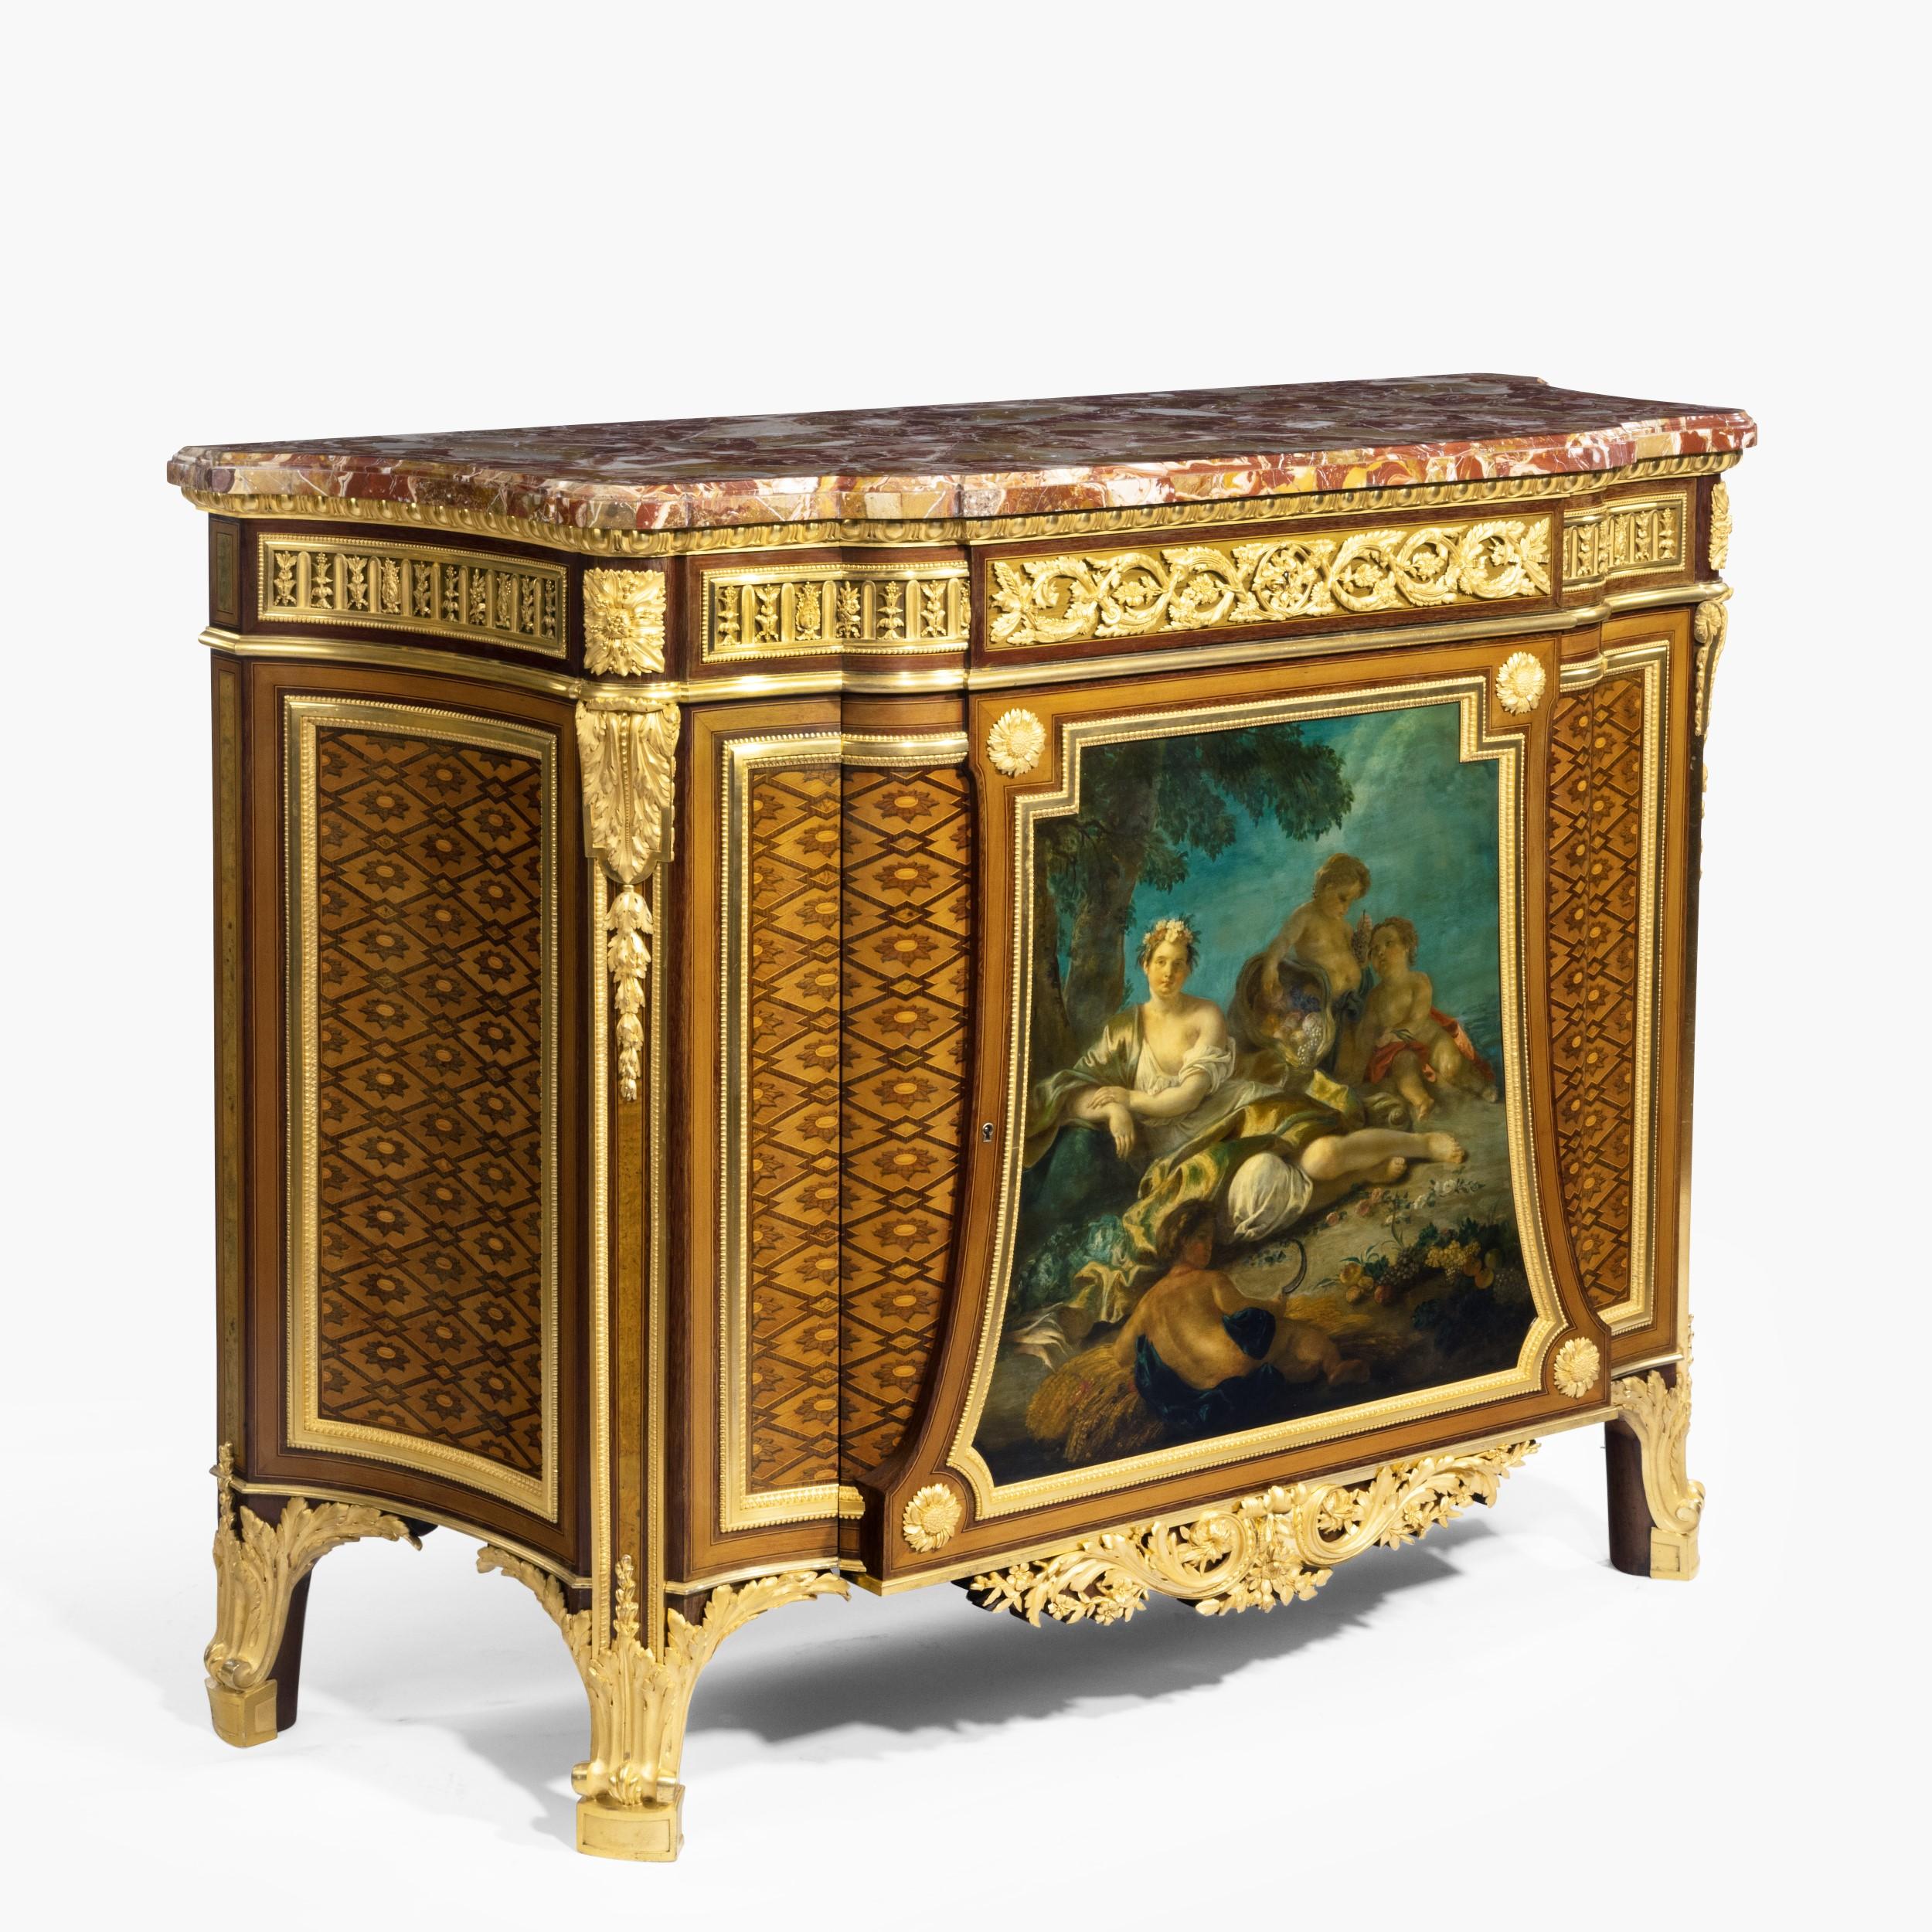 Très belle commode de style Louis XVI en marqueterie et bronze doré
Par Henry Dasson

D'après un modèle de Jean-Henri Riesener, fourni à Marie-Antoinette pour Versailles. Construit en bois de lièvre finement patiné, avec une plate-forme en marbre